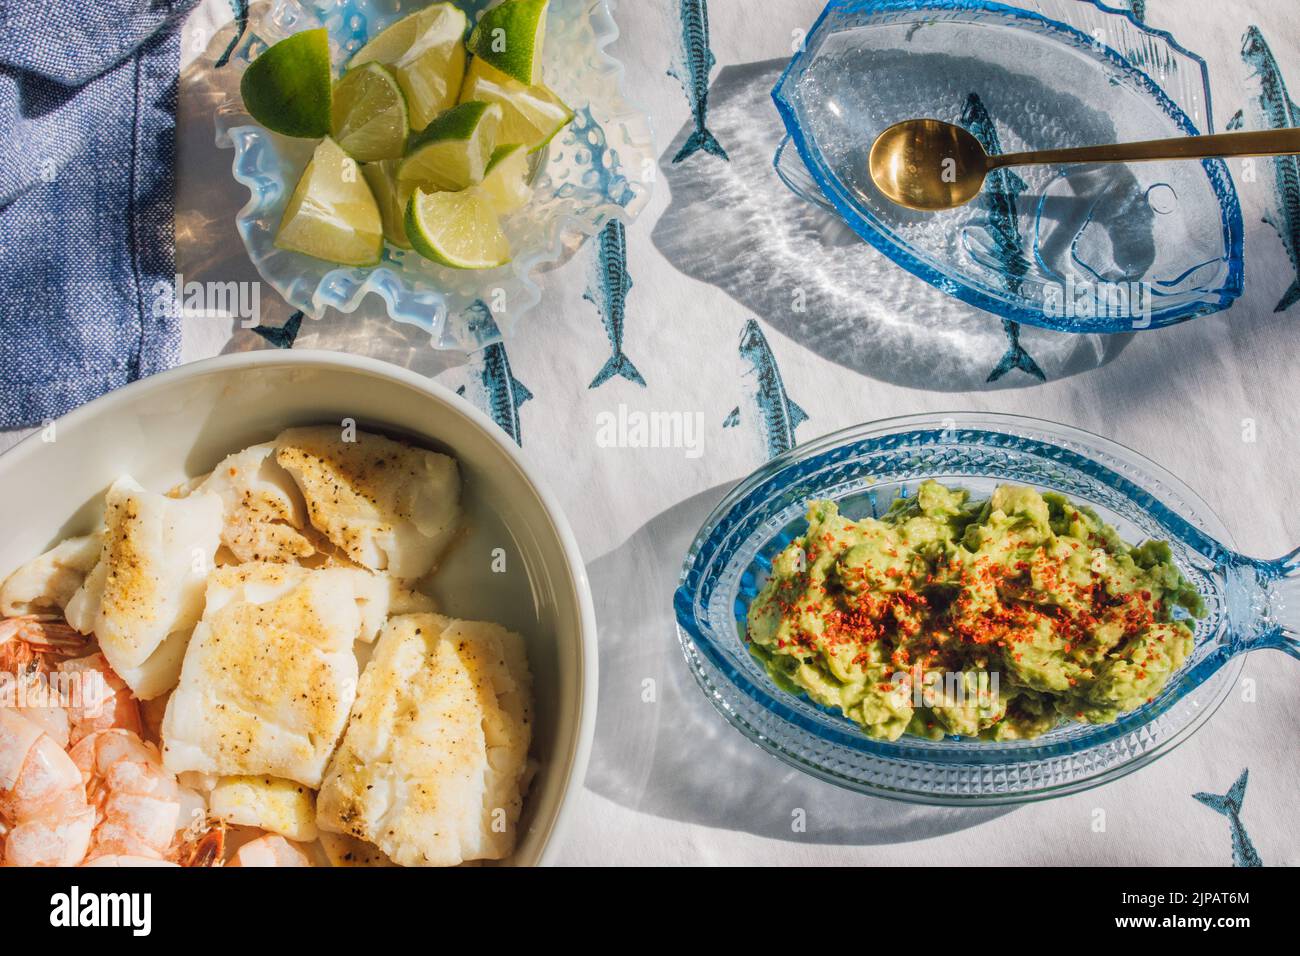 Mesa de cena de marisco de verano para hacer tacos de pescado, gambas, guacamole, lima, tortilla, salsa sobre mantel de pescado azul y blanco bajo el sol Foto de stock